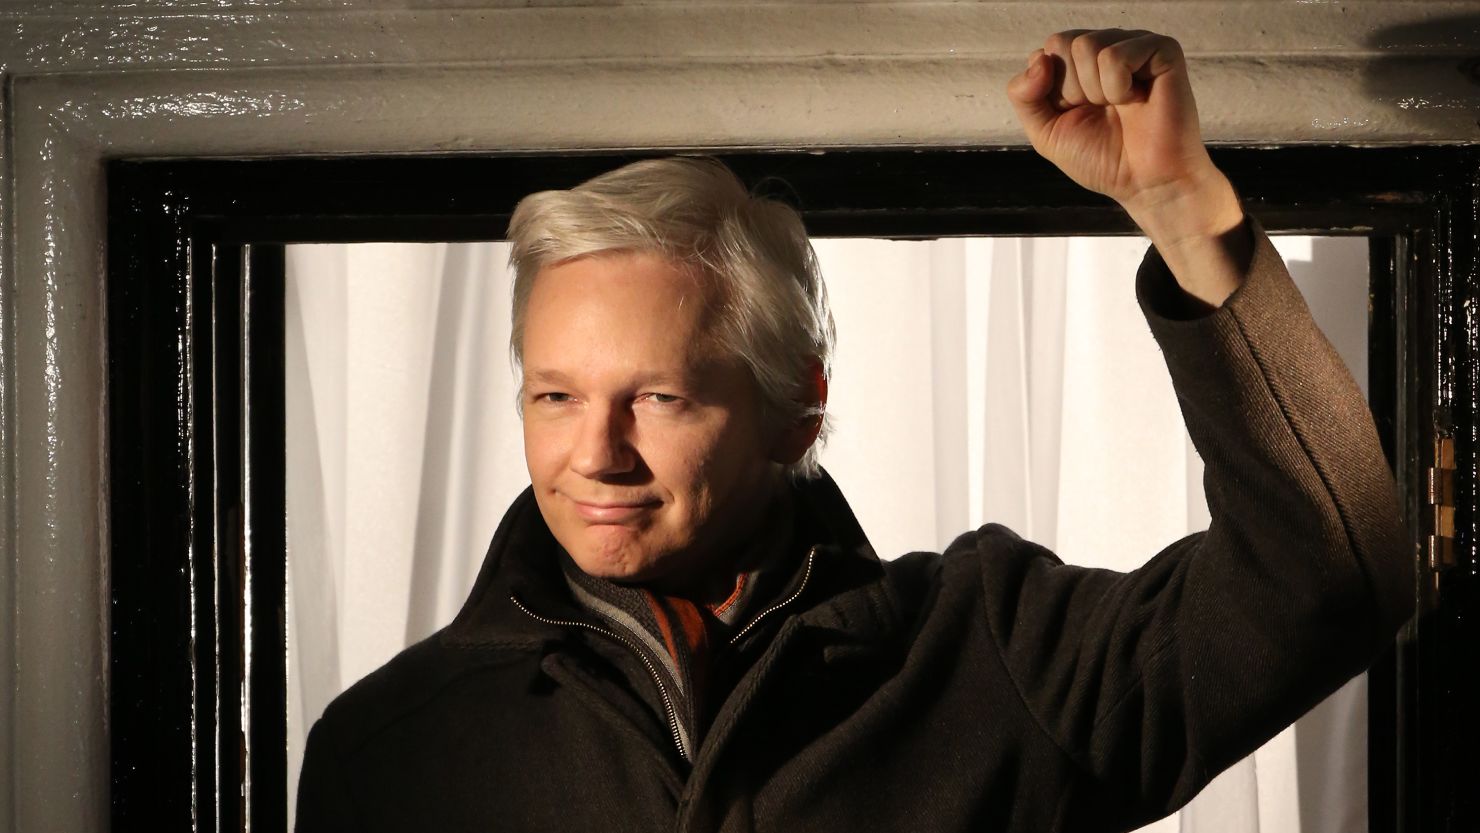 Wikileaks founder Julian Assange speaks from the Ecuadorian Embassy on December 20, 2012 in London, England.